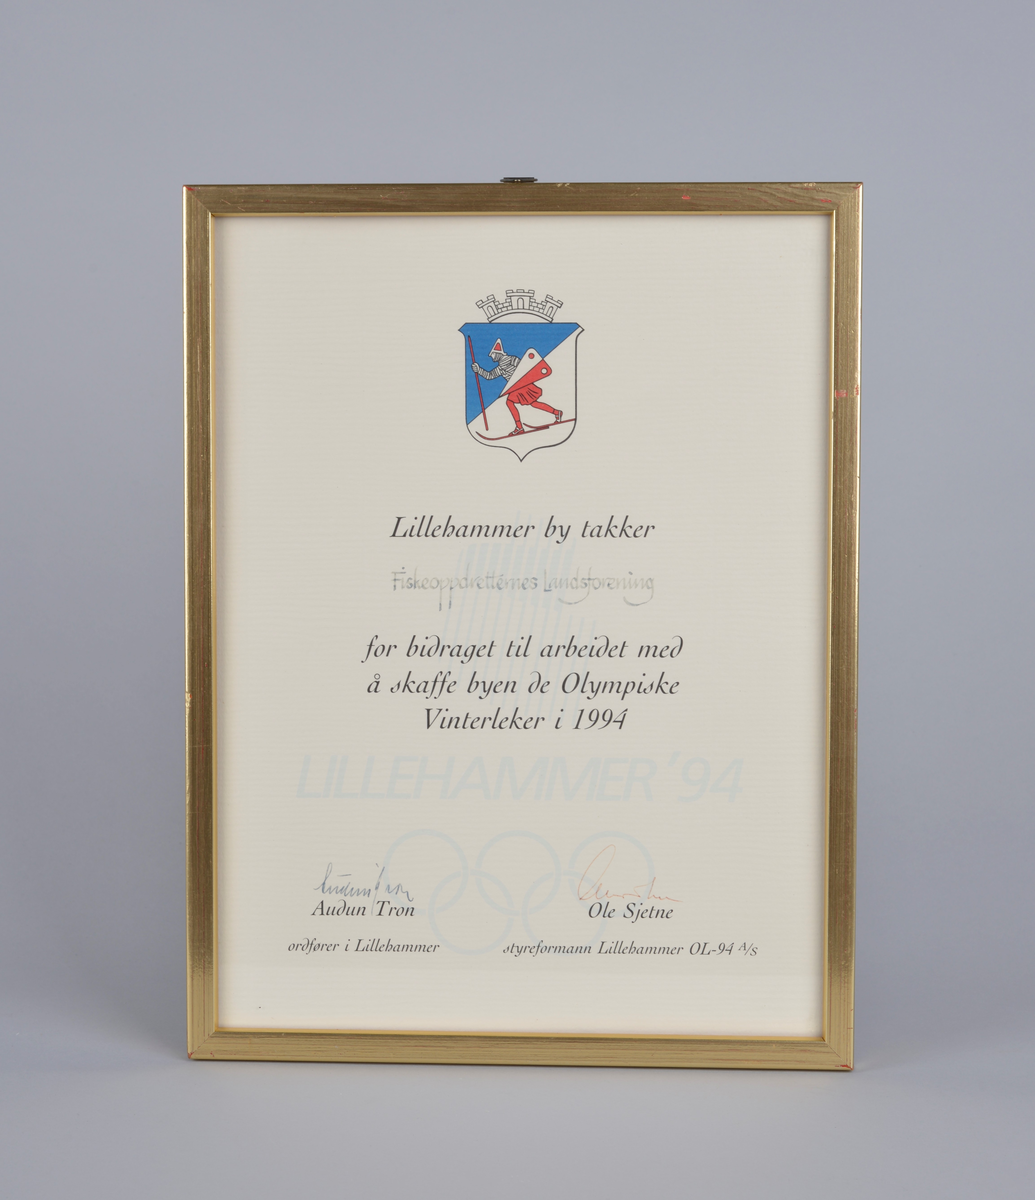 Innrammet takkebrev fra Lillehammer by i anledning støtte til arbeidet med å skaffe byen de Olympiske Leker i 1994